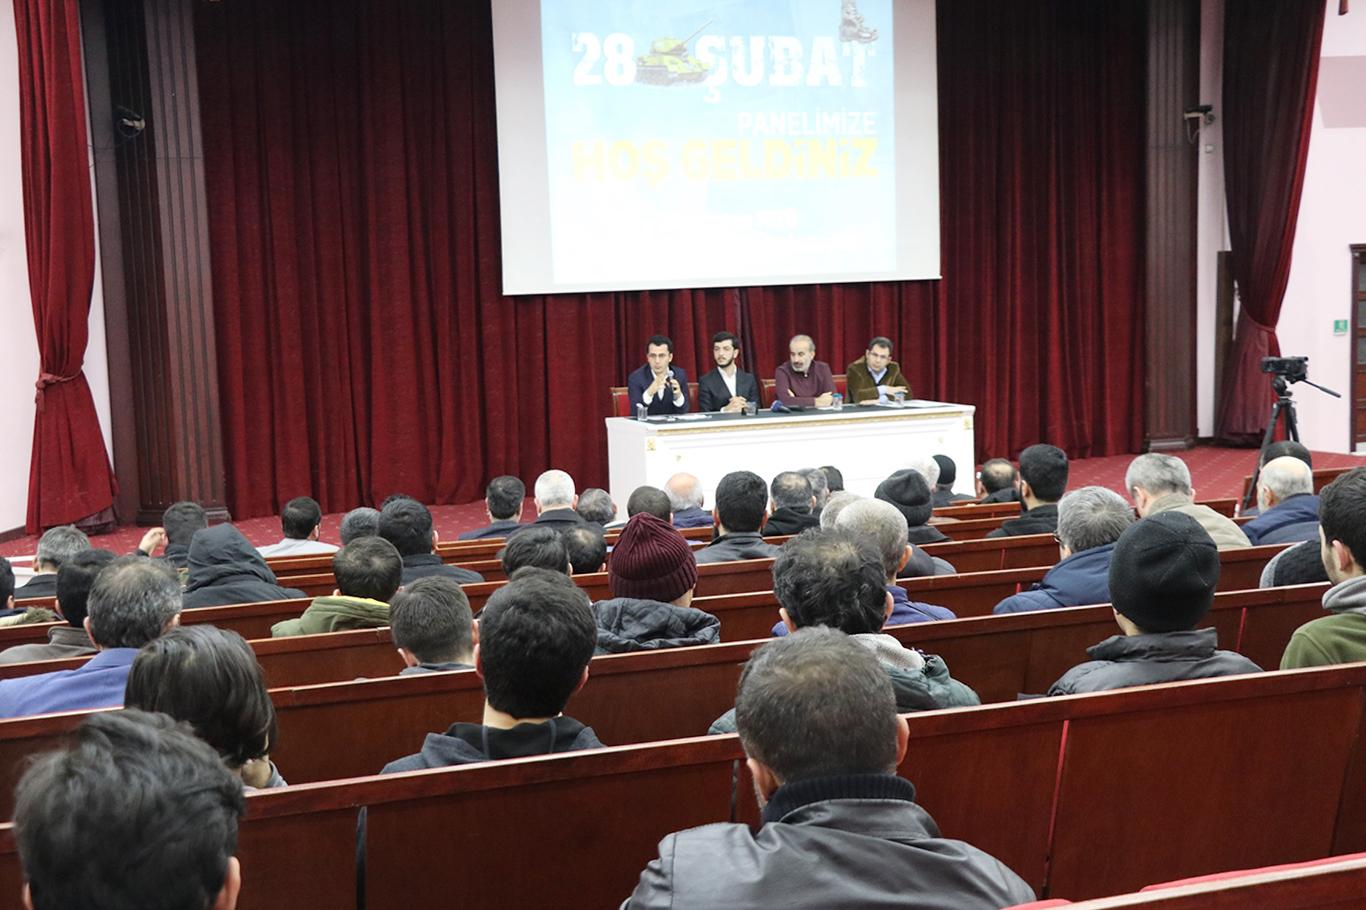 İstanbul'da 28 Şubat paneli düzenlendi